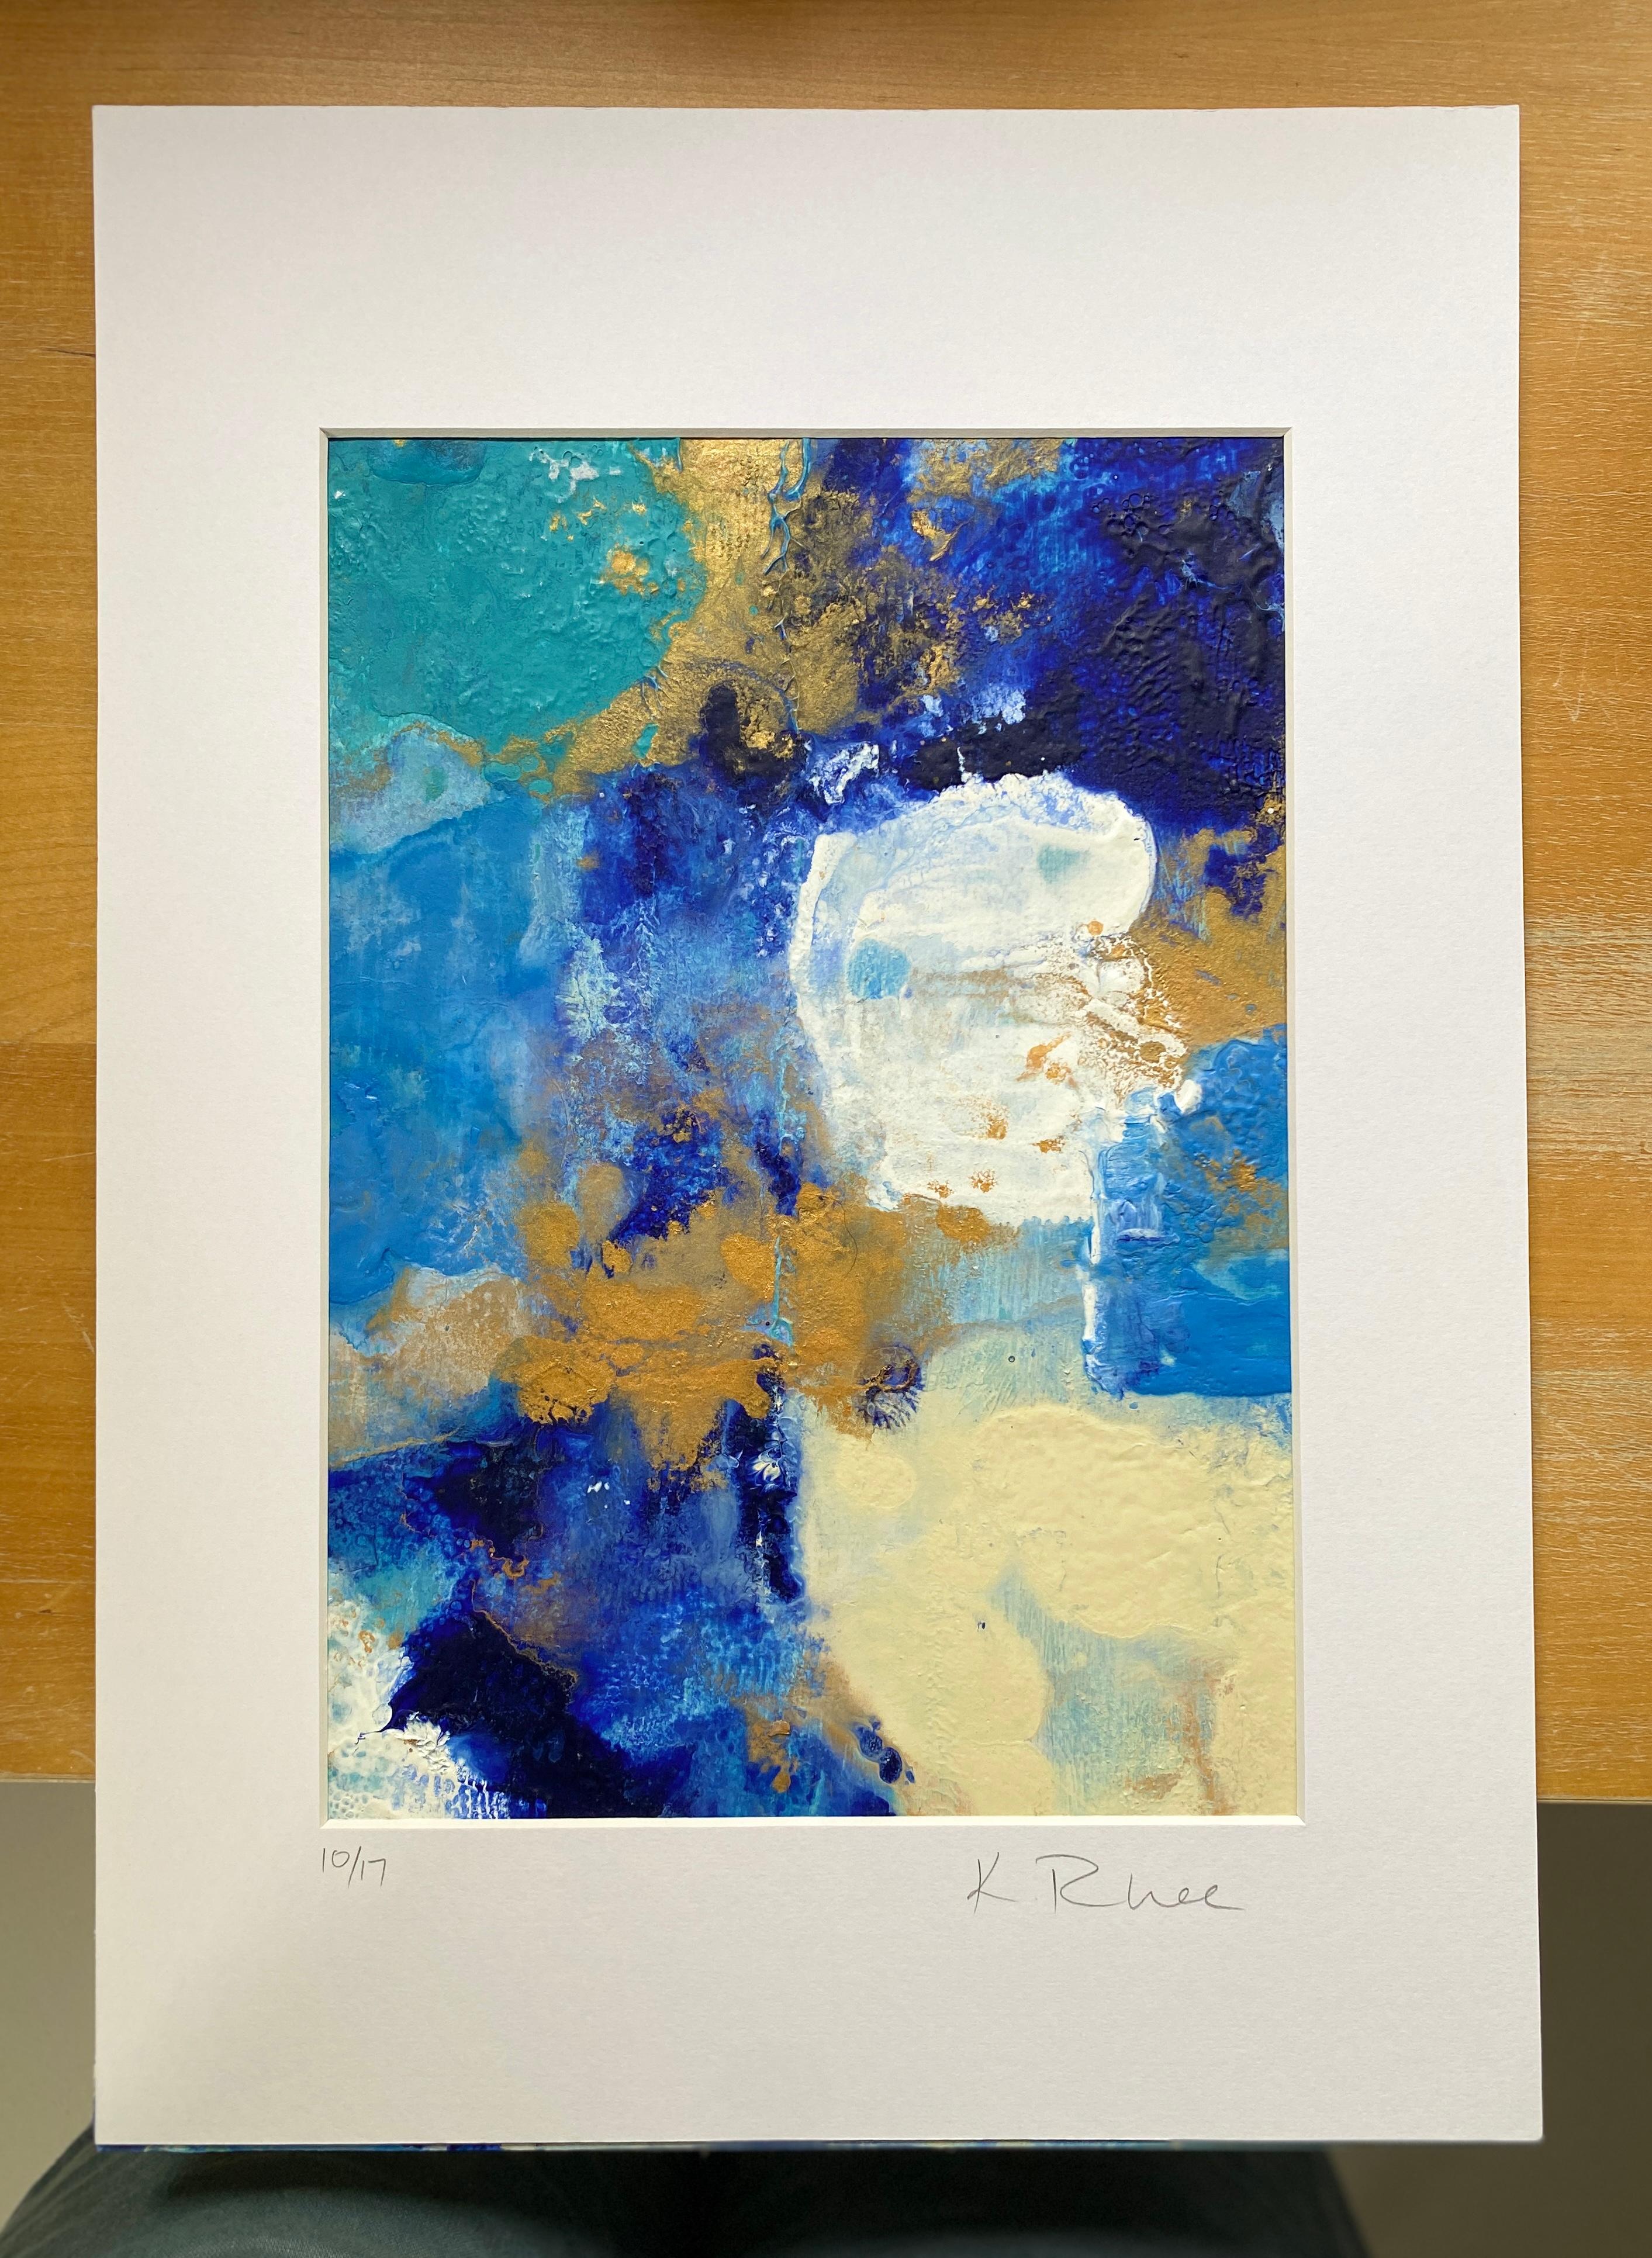 Aquarell- und Wolkenserie Nr. 3, abstrakt auf Papier, gerahmt mit weißem Mattkarton (Abstrakter Expressionismus), Painting, von Kathleen Rhee